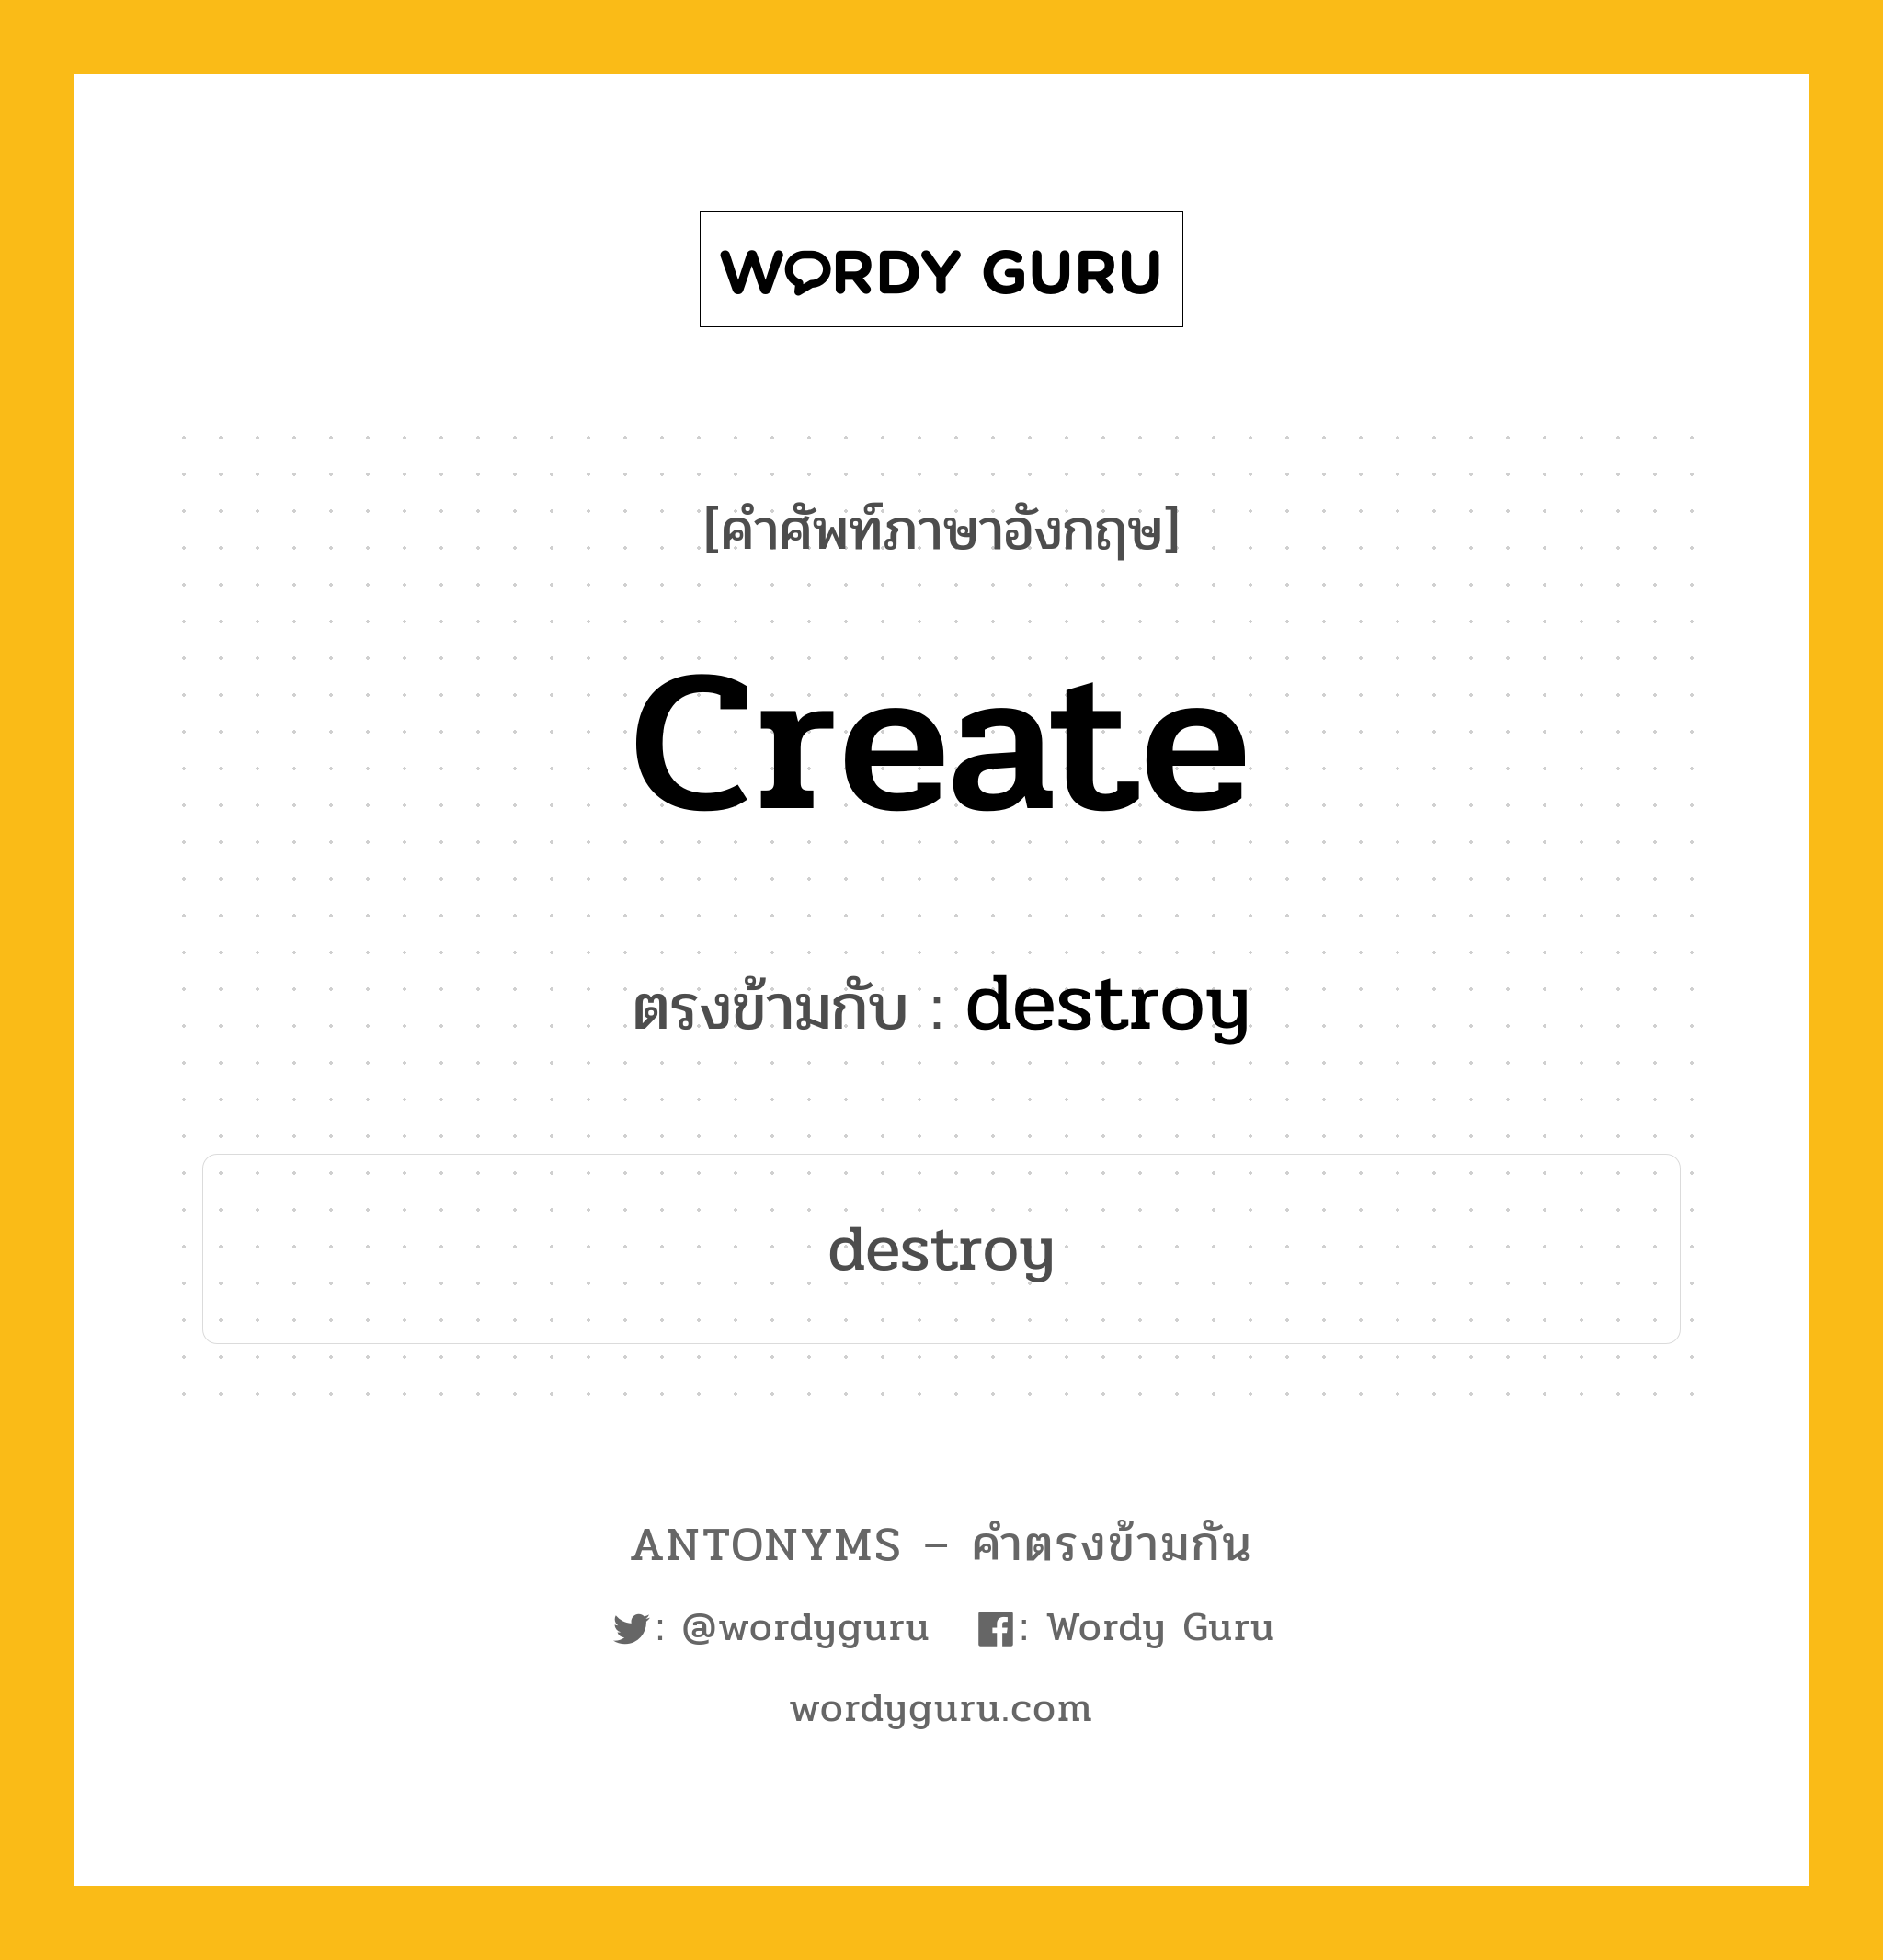 create เป็นคำตรงข้ามกับคำไหนบ้าง?, คำศัพท์ภาษาอังกฤษ create ตรงข้ามกับ destroy หมวด destroy